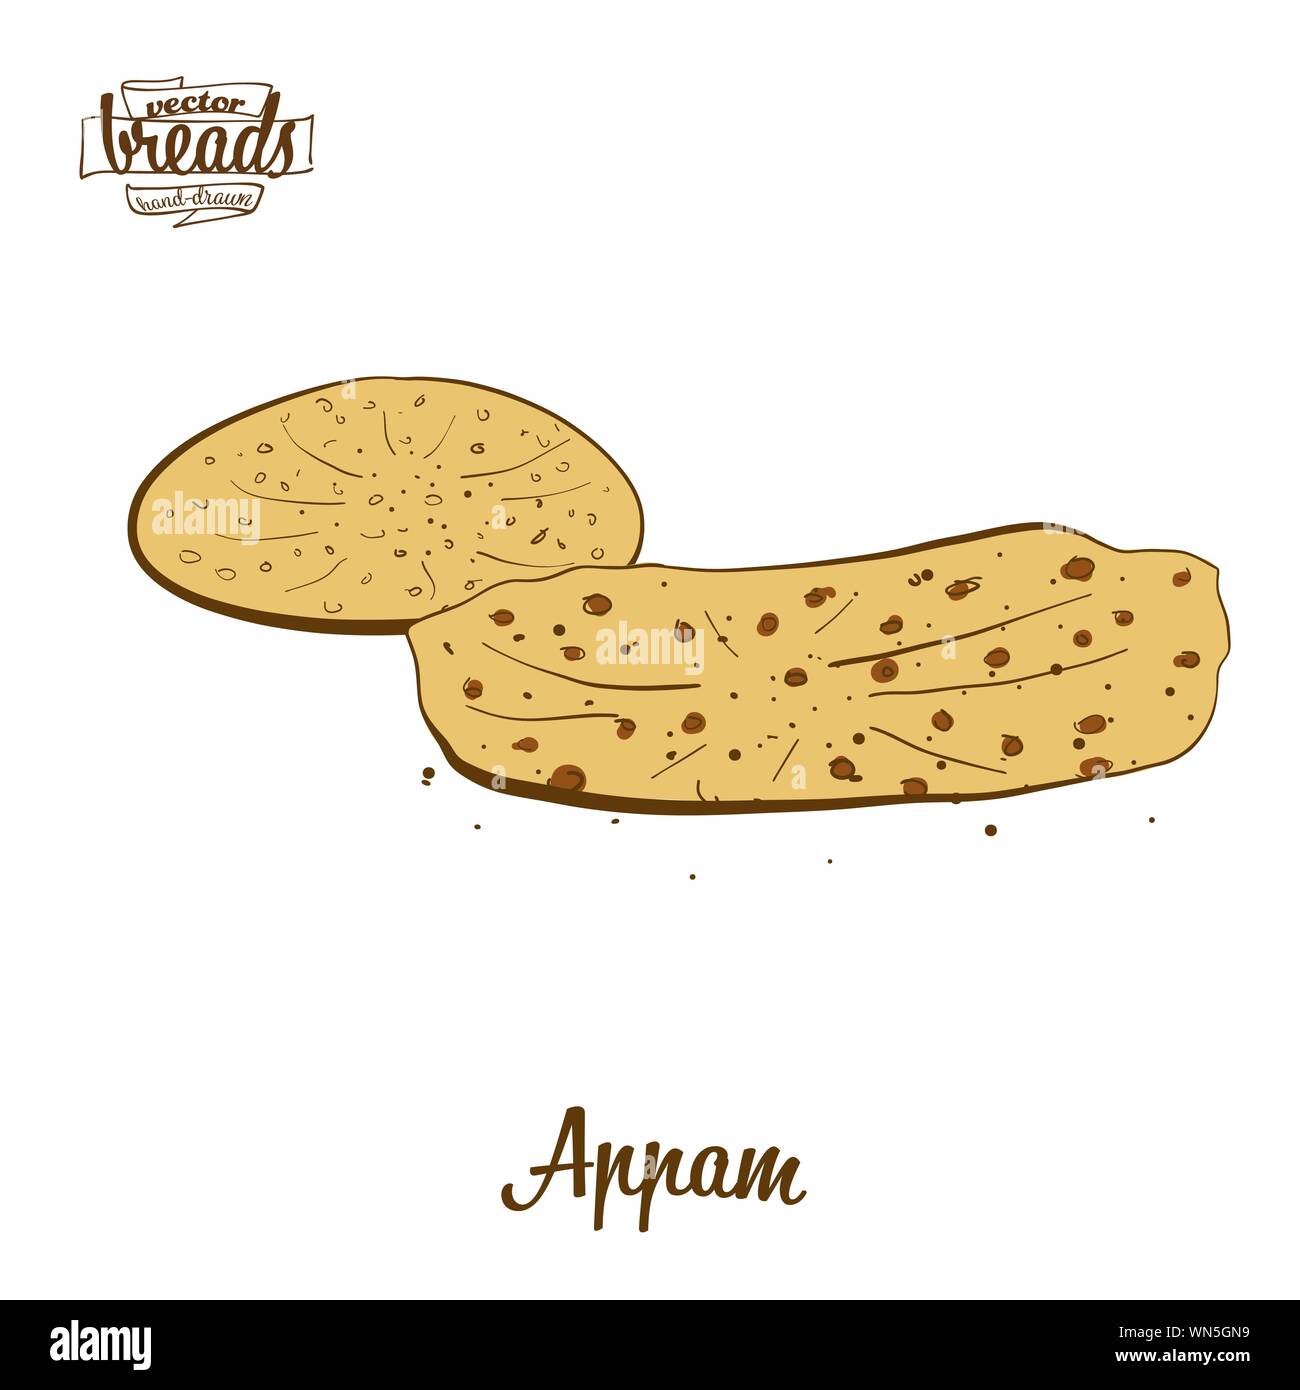 Dessin couleur d'Appam pain. Vector illustration d'aliments est très variable, généralement connu dans l'Inde. Pain de couleur des croquis. Illustration de Vecteur